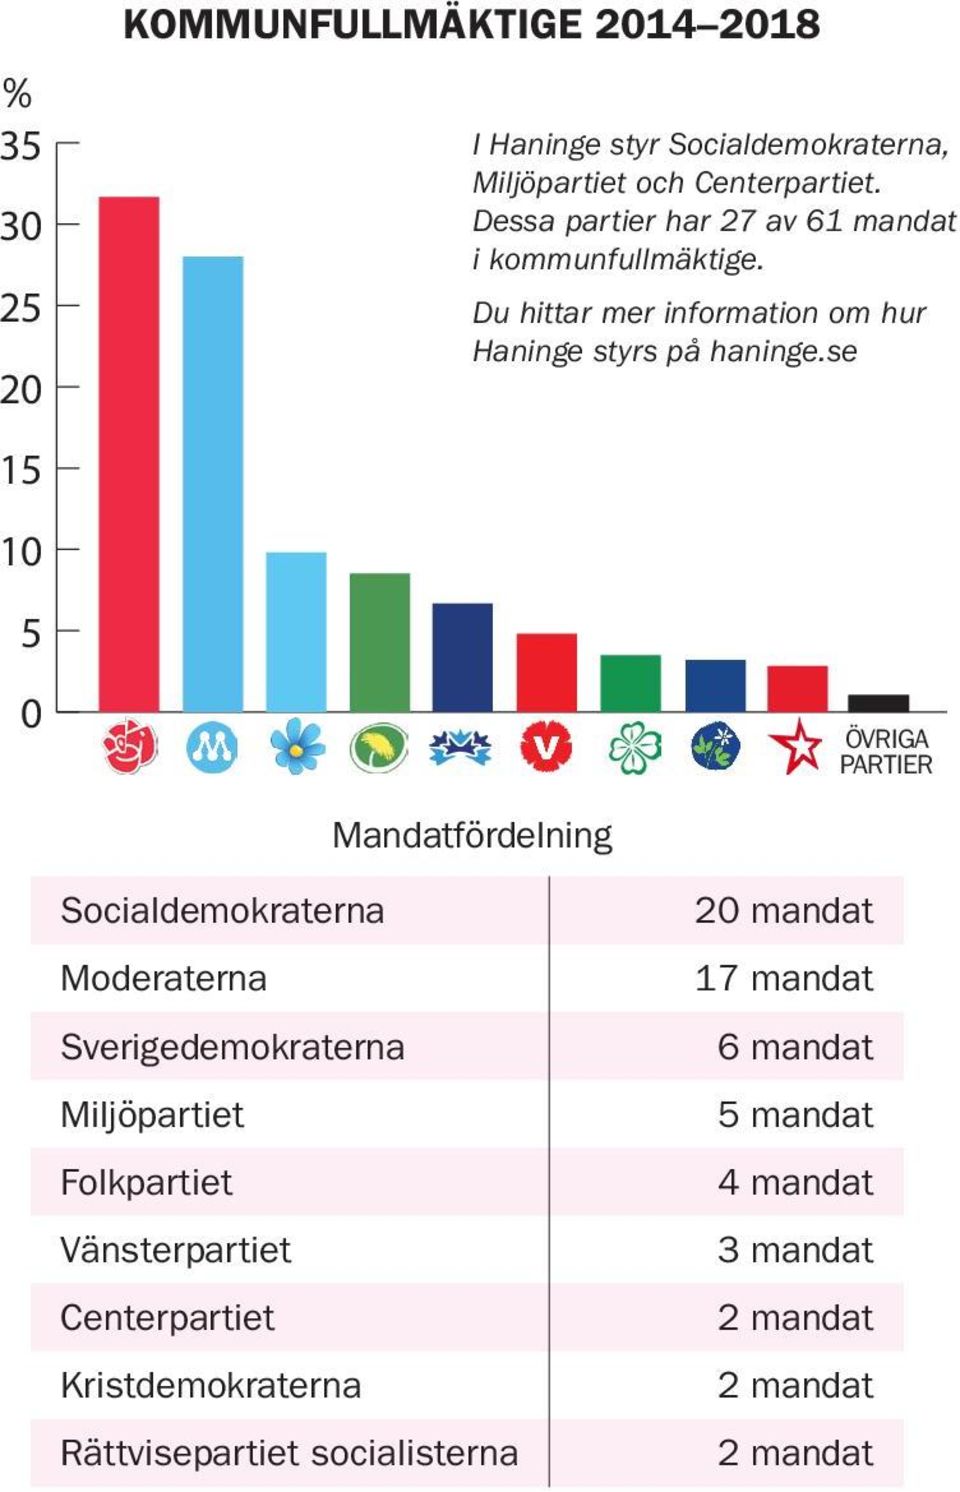 se SD V KD RS ÖVRIGA Övriga C ÖVR PARTIER partier Mandatfördelning Socialdemokraterna Moderaterna Sverigedemokraterna Miljöpartiet